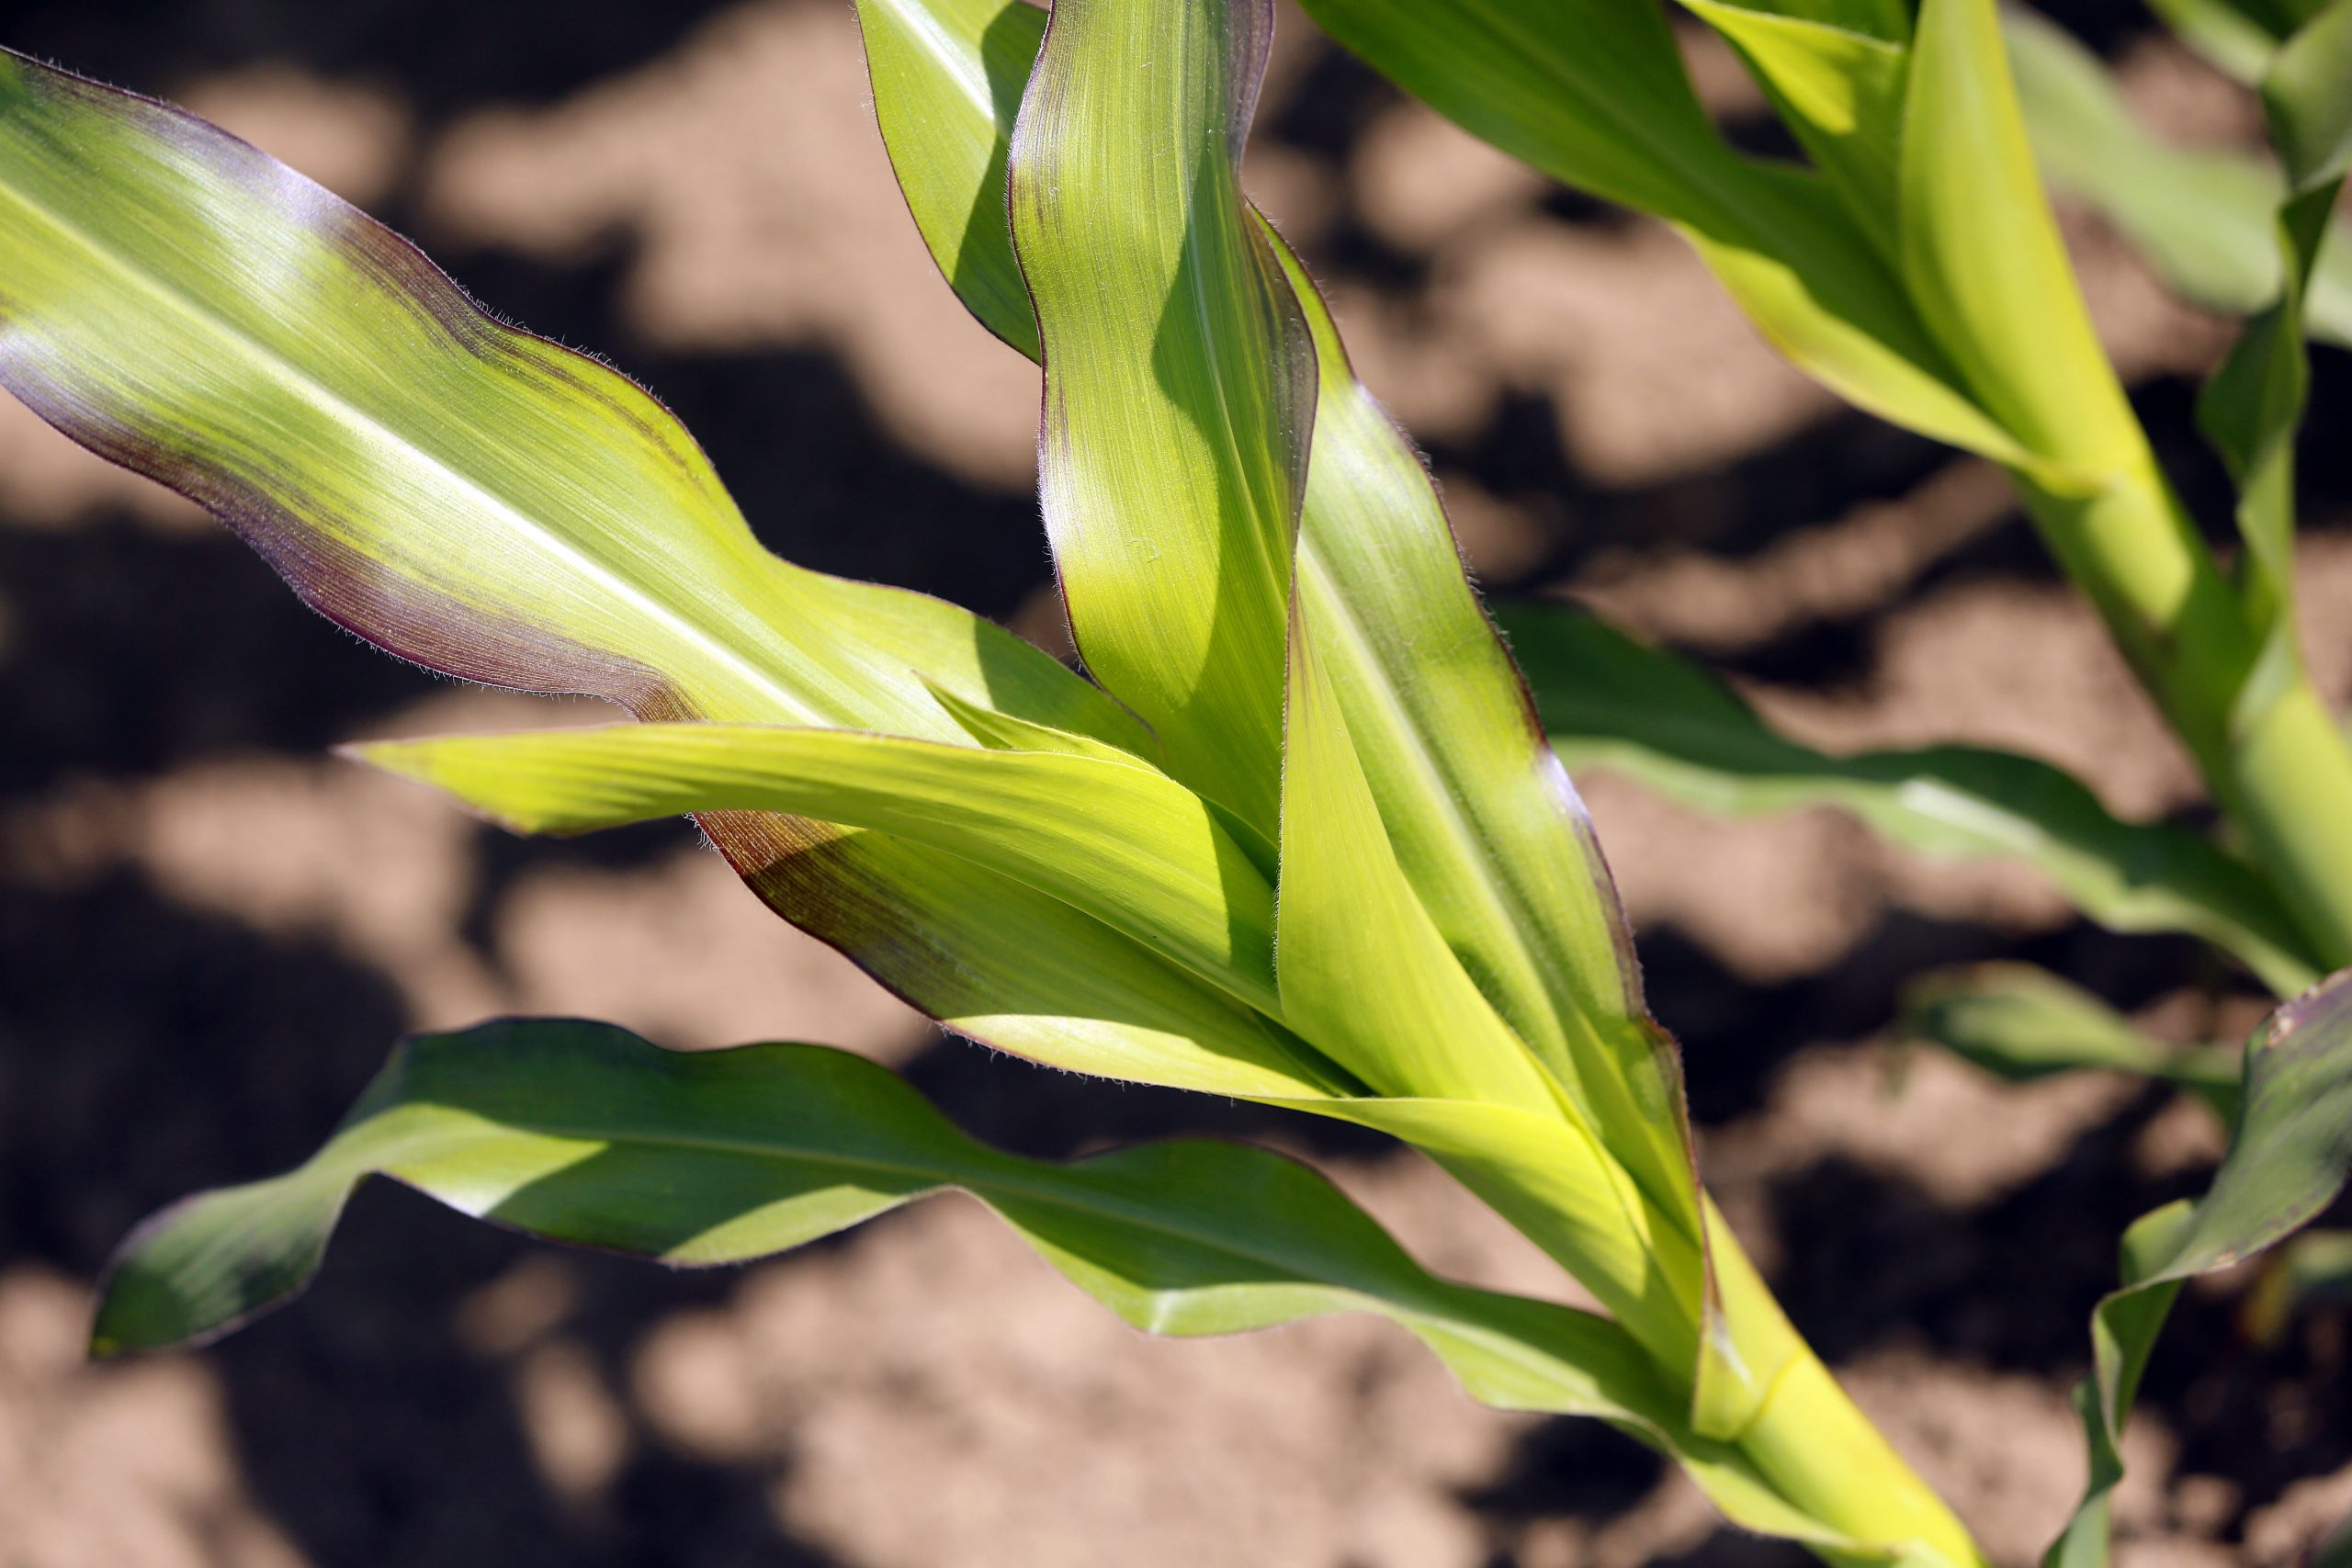 Raising the vitamin E content in maize. Photo: Henk Riswick